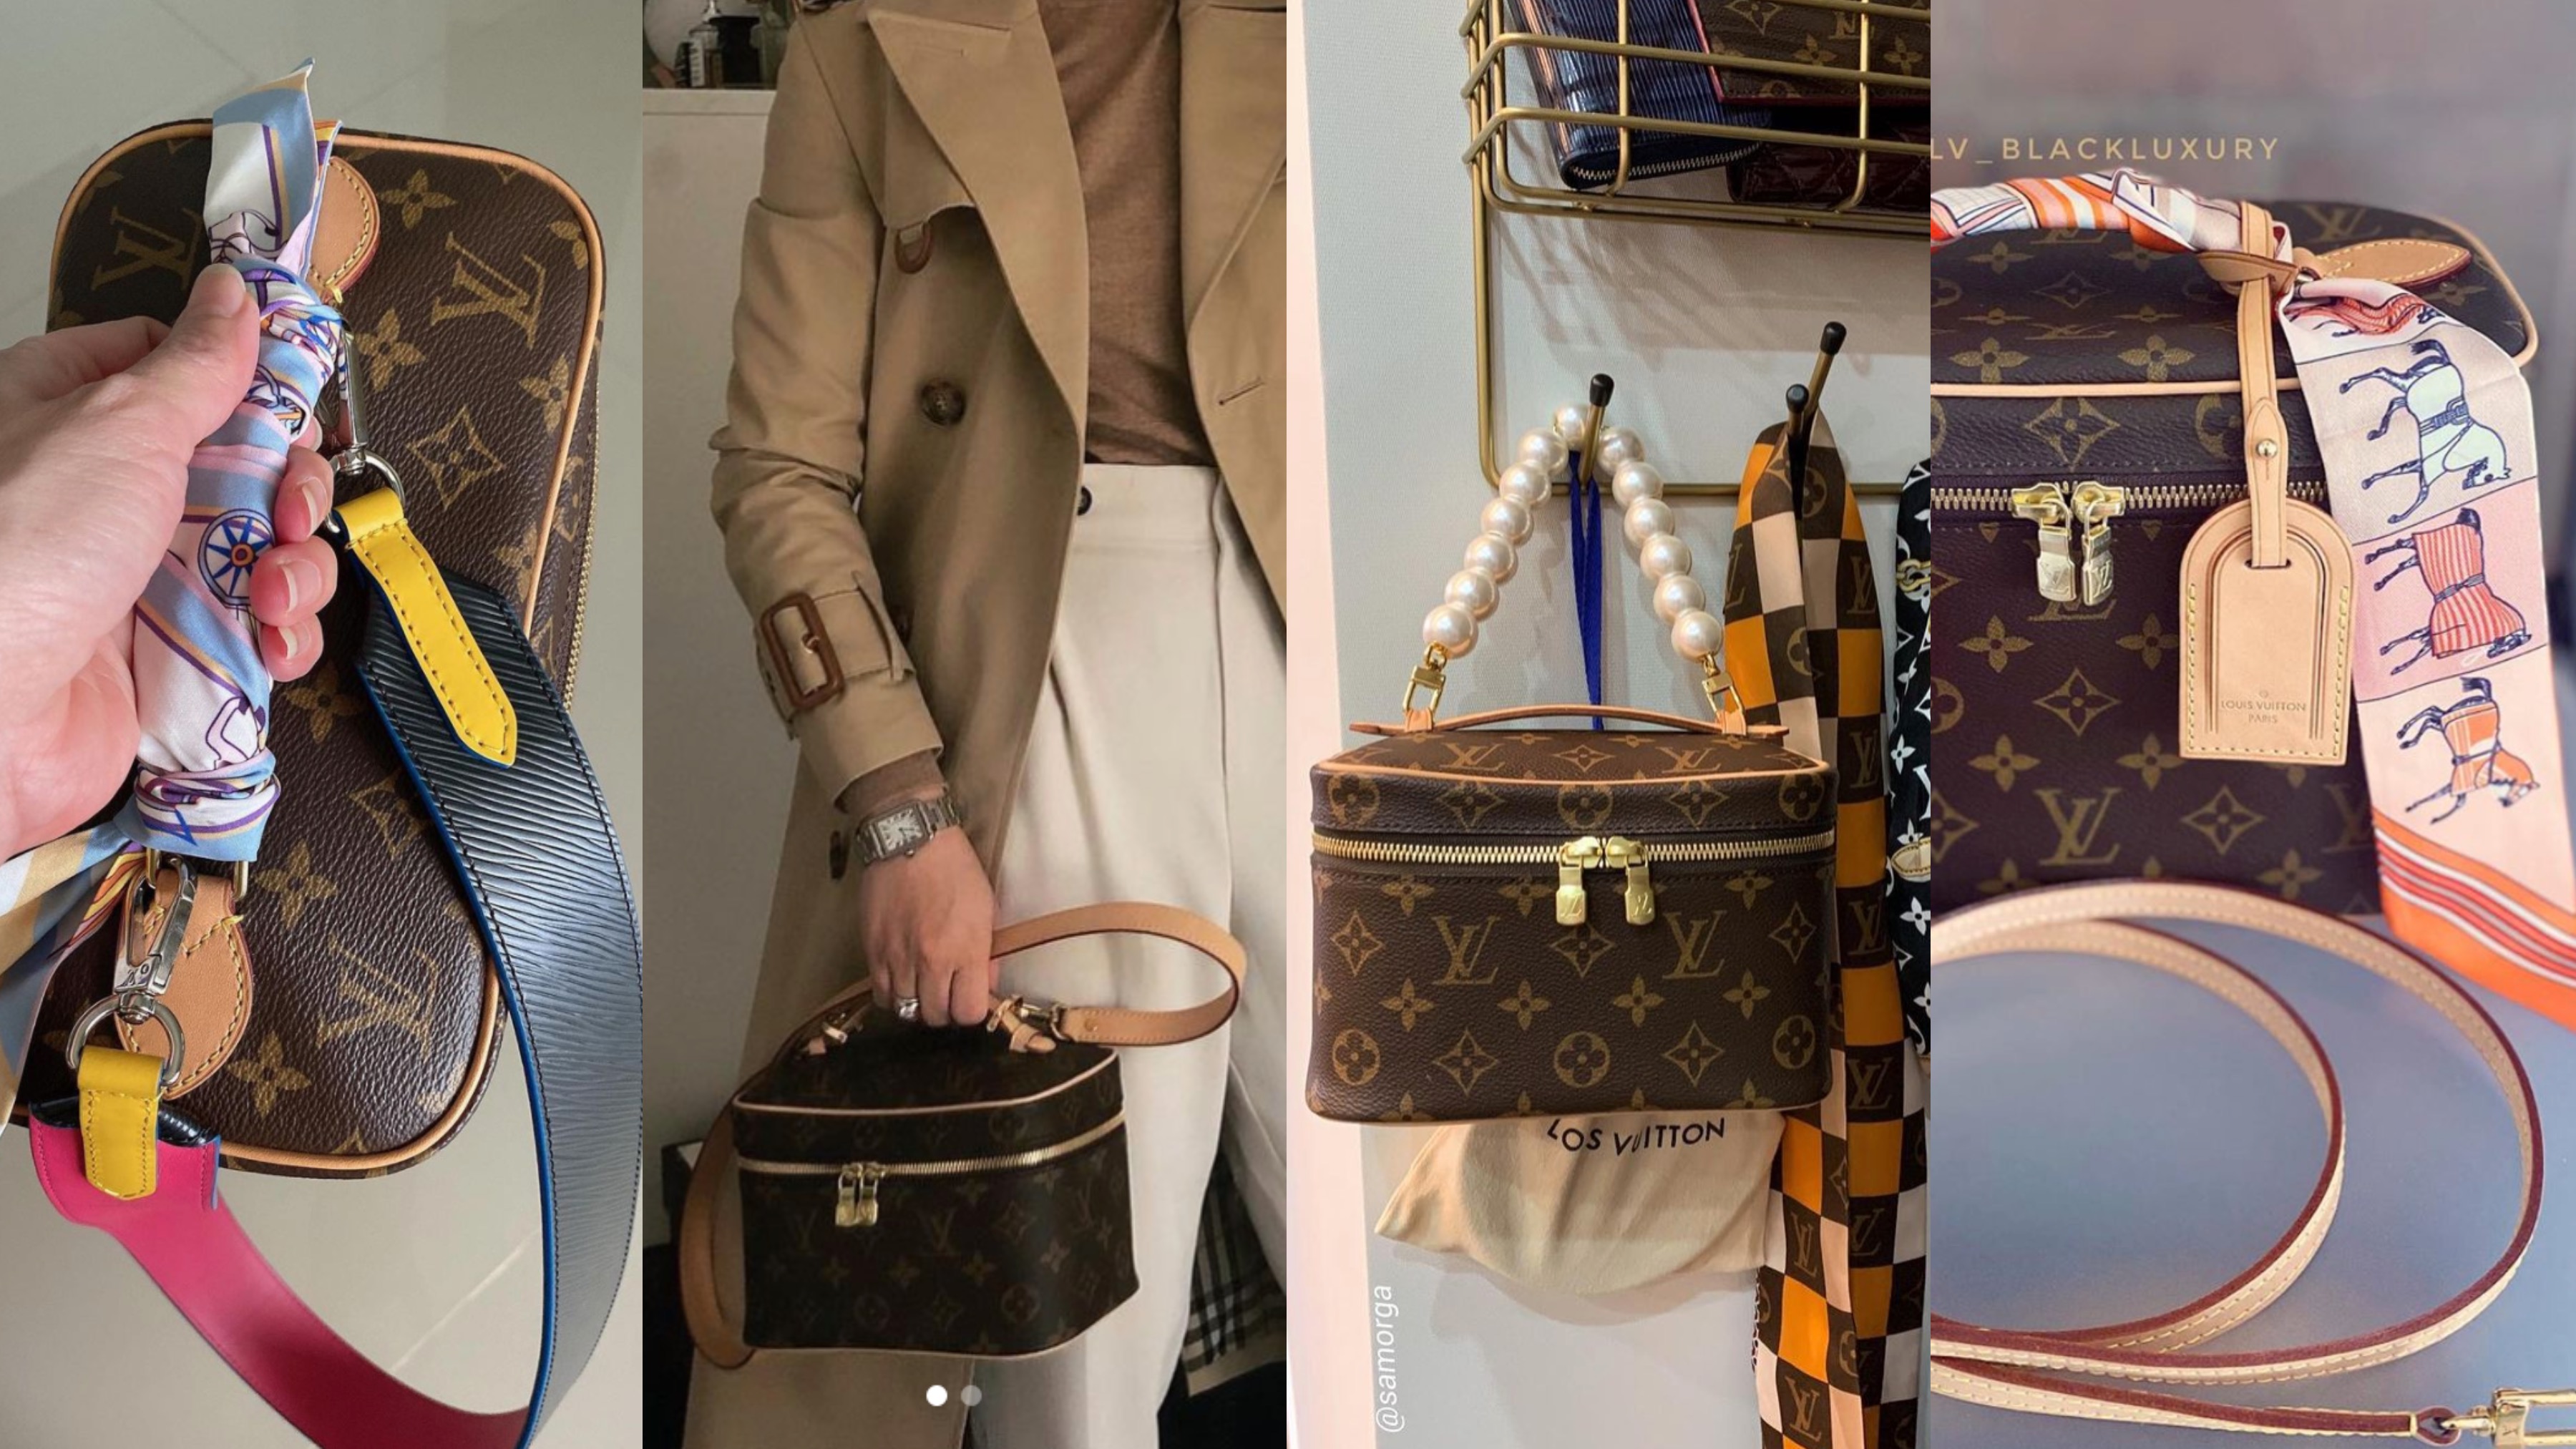 Le borse Louis Vuitton formato mini collezionate da Chiara